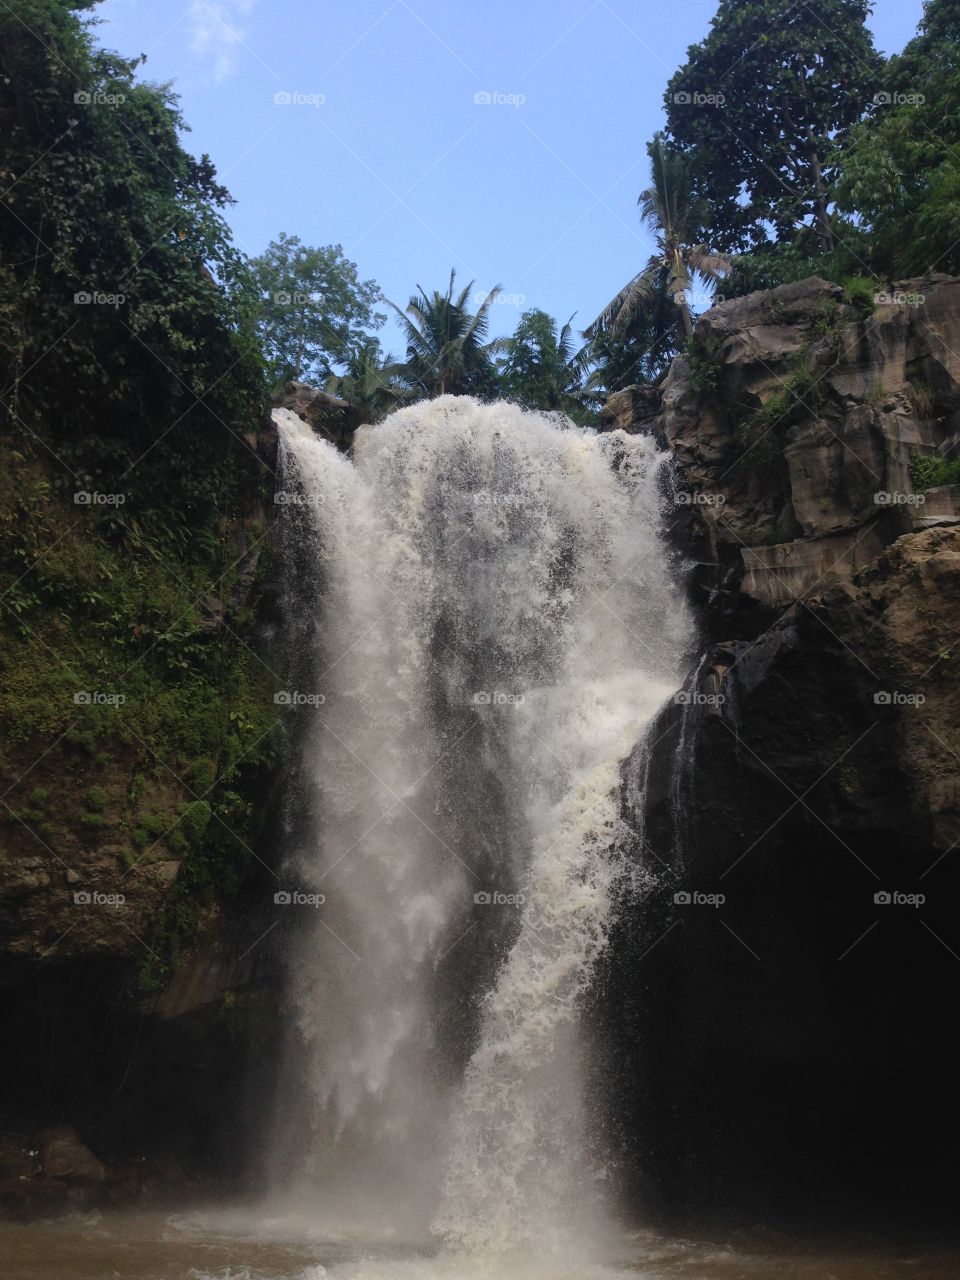 #water #waterfall #nature #foap #instagram